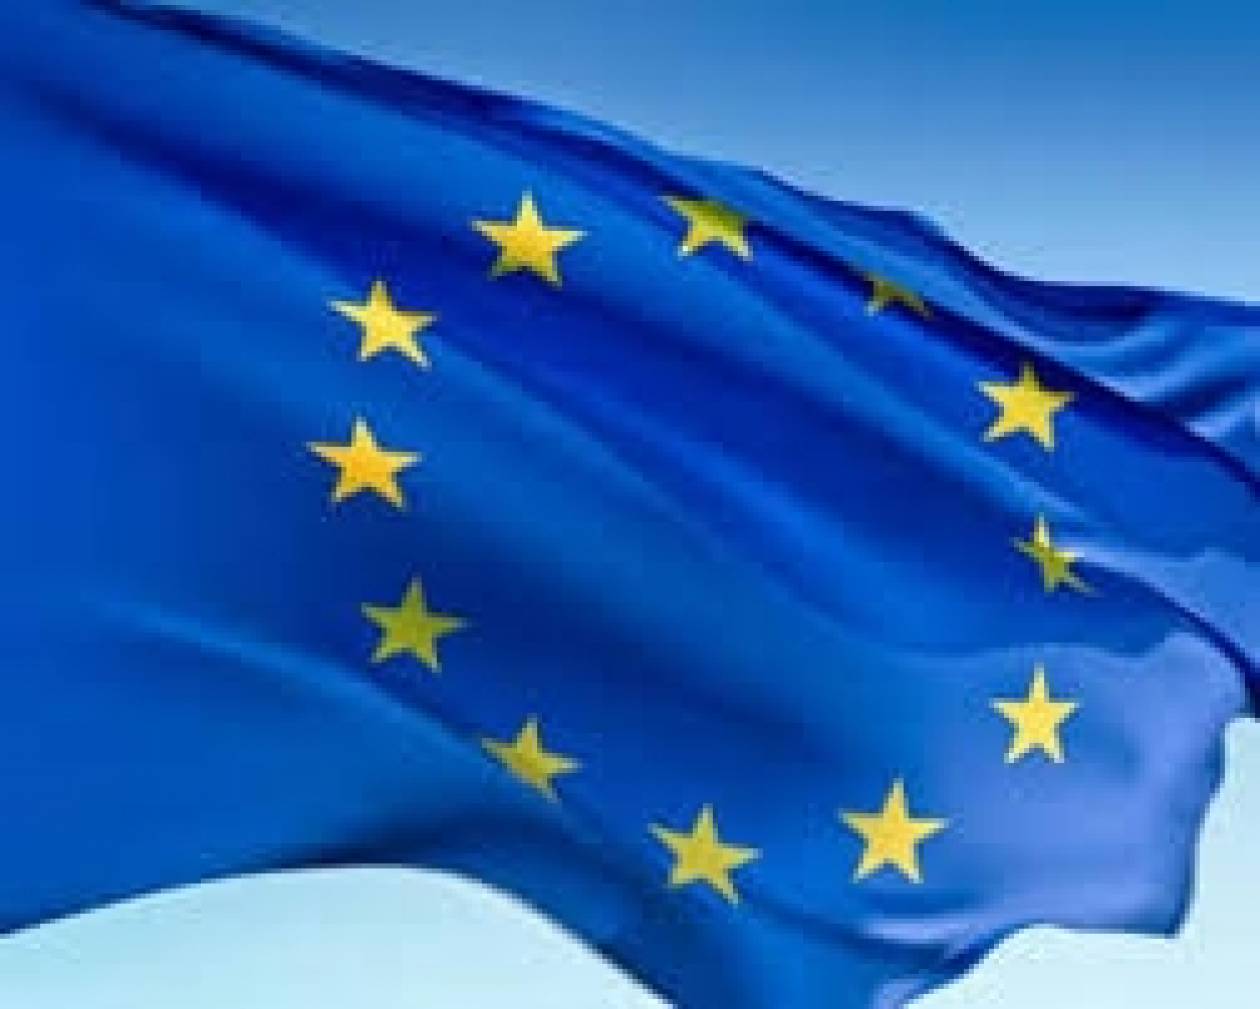 Οδηγία της ΕΕ δίνει το δικαίωμα ψήφου Ομογενών στις εθνικές εκλογές